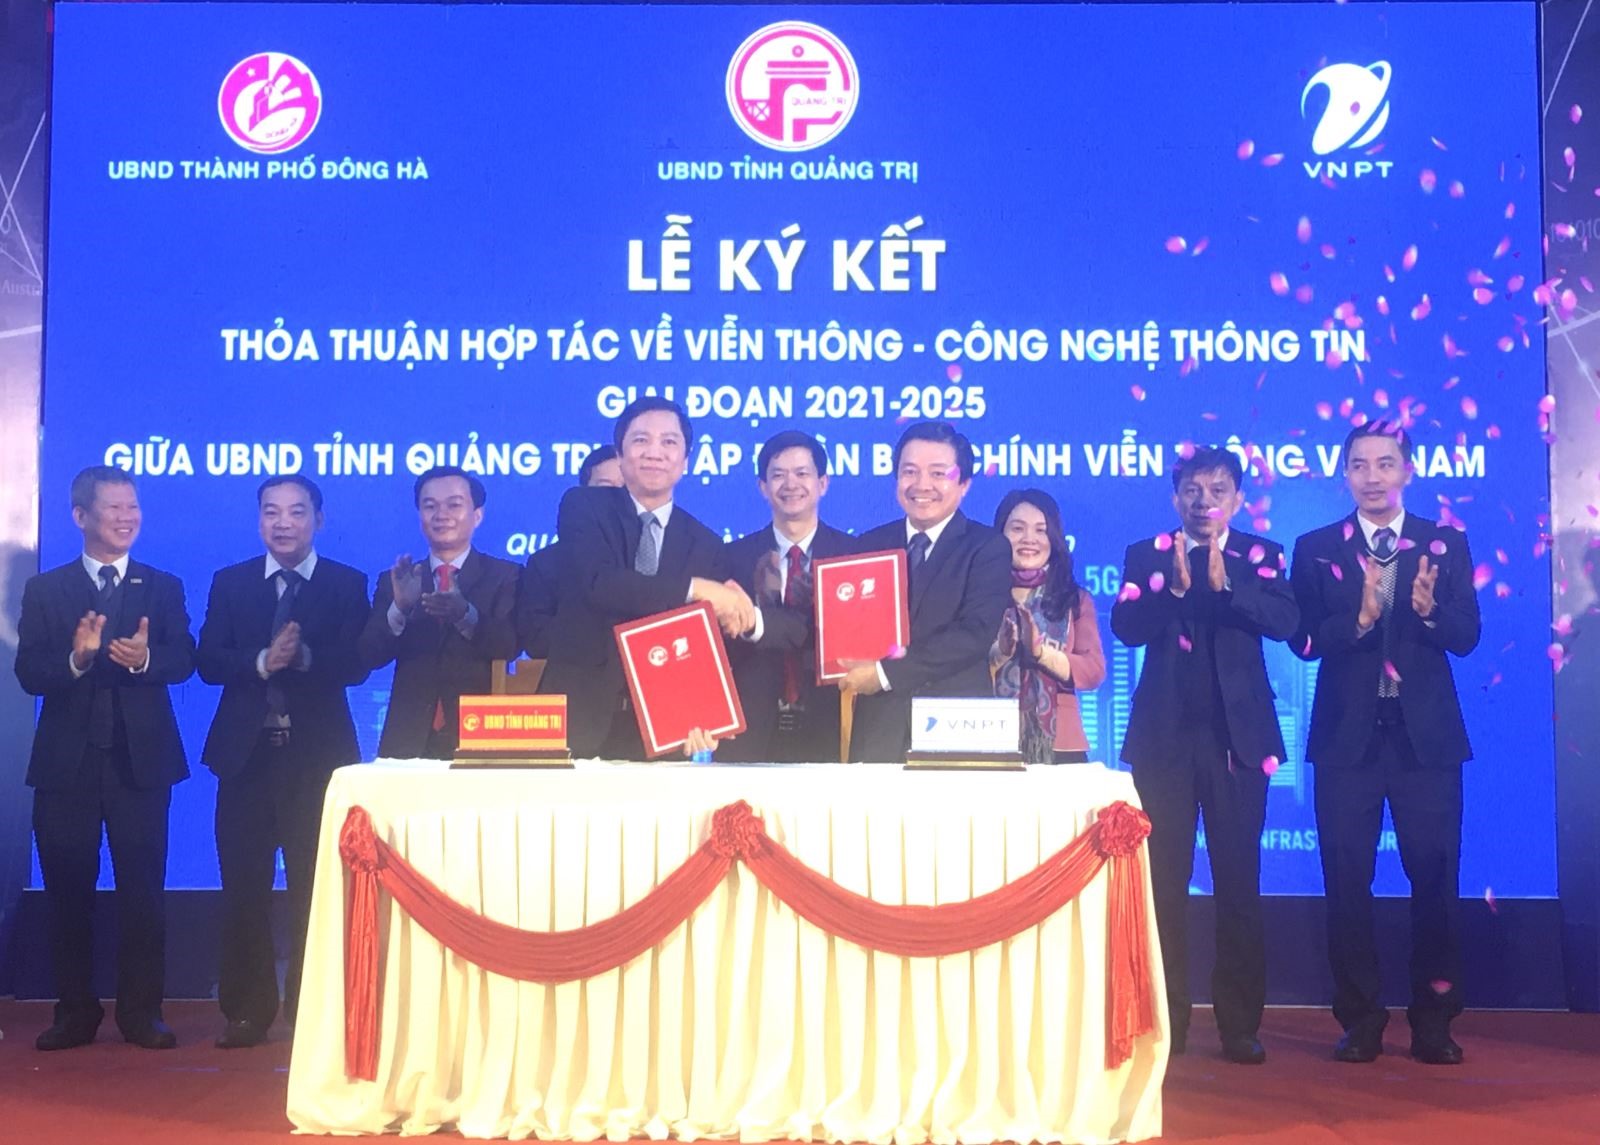 UBND tỉnh Quảng Trị và VNPT ký kết thỏa thuận hợp tác viễn thông – công nghệ thông tin giai đoạn 2021 - 2025